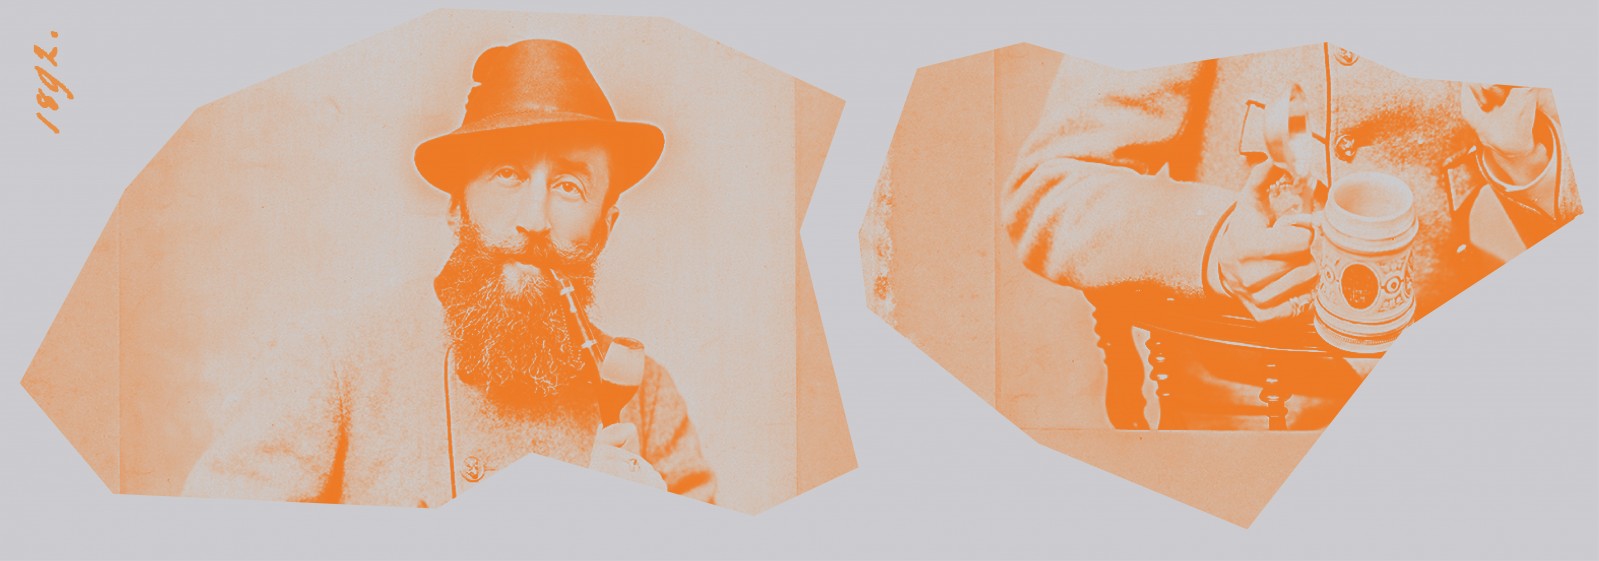 Archiwalne zdjęcie przedstawiające mężczyznę w kapeluszu, palącego fajkę. Druga fotografia obok przedstawia tułów mężczyzny, widać też rękę trzymającą kufel. 